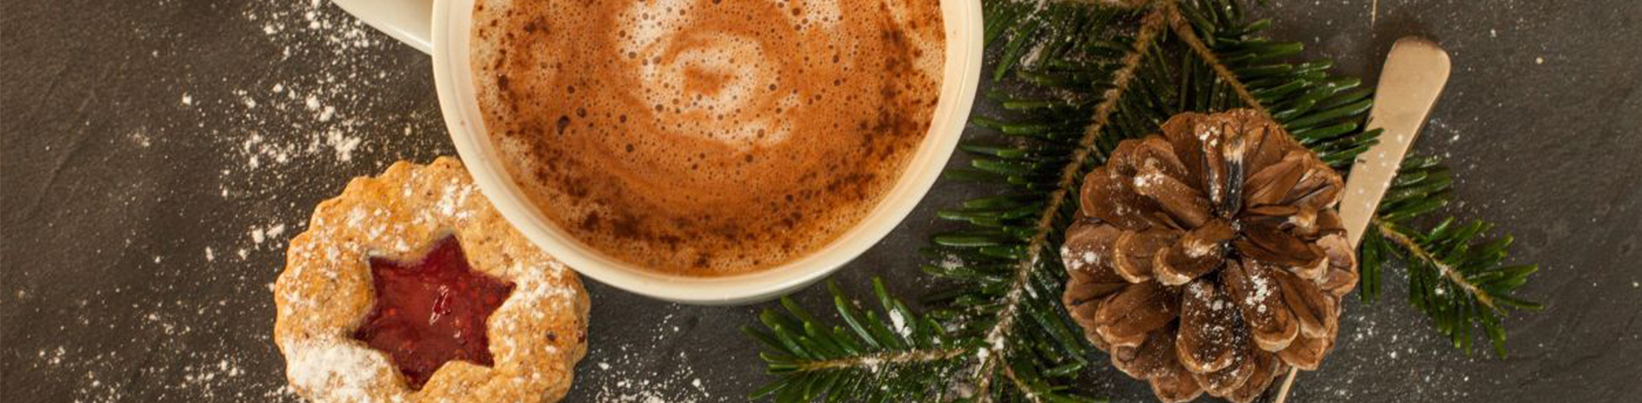 rauwe cacao voor kerstmis